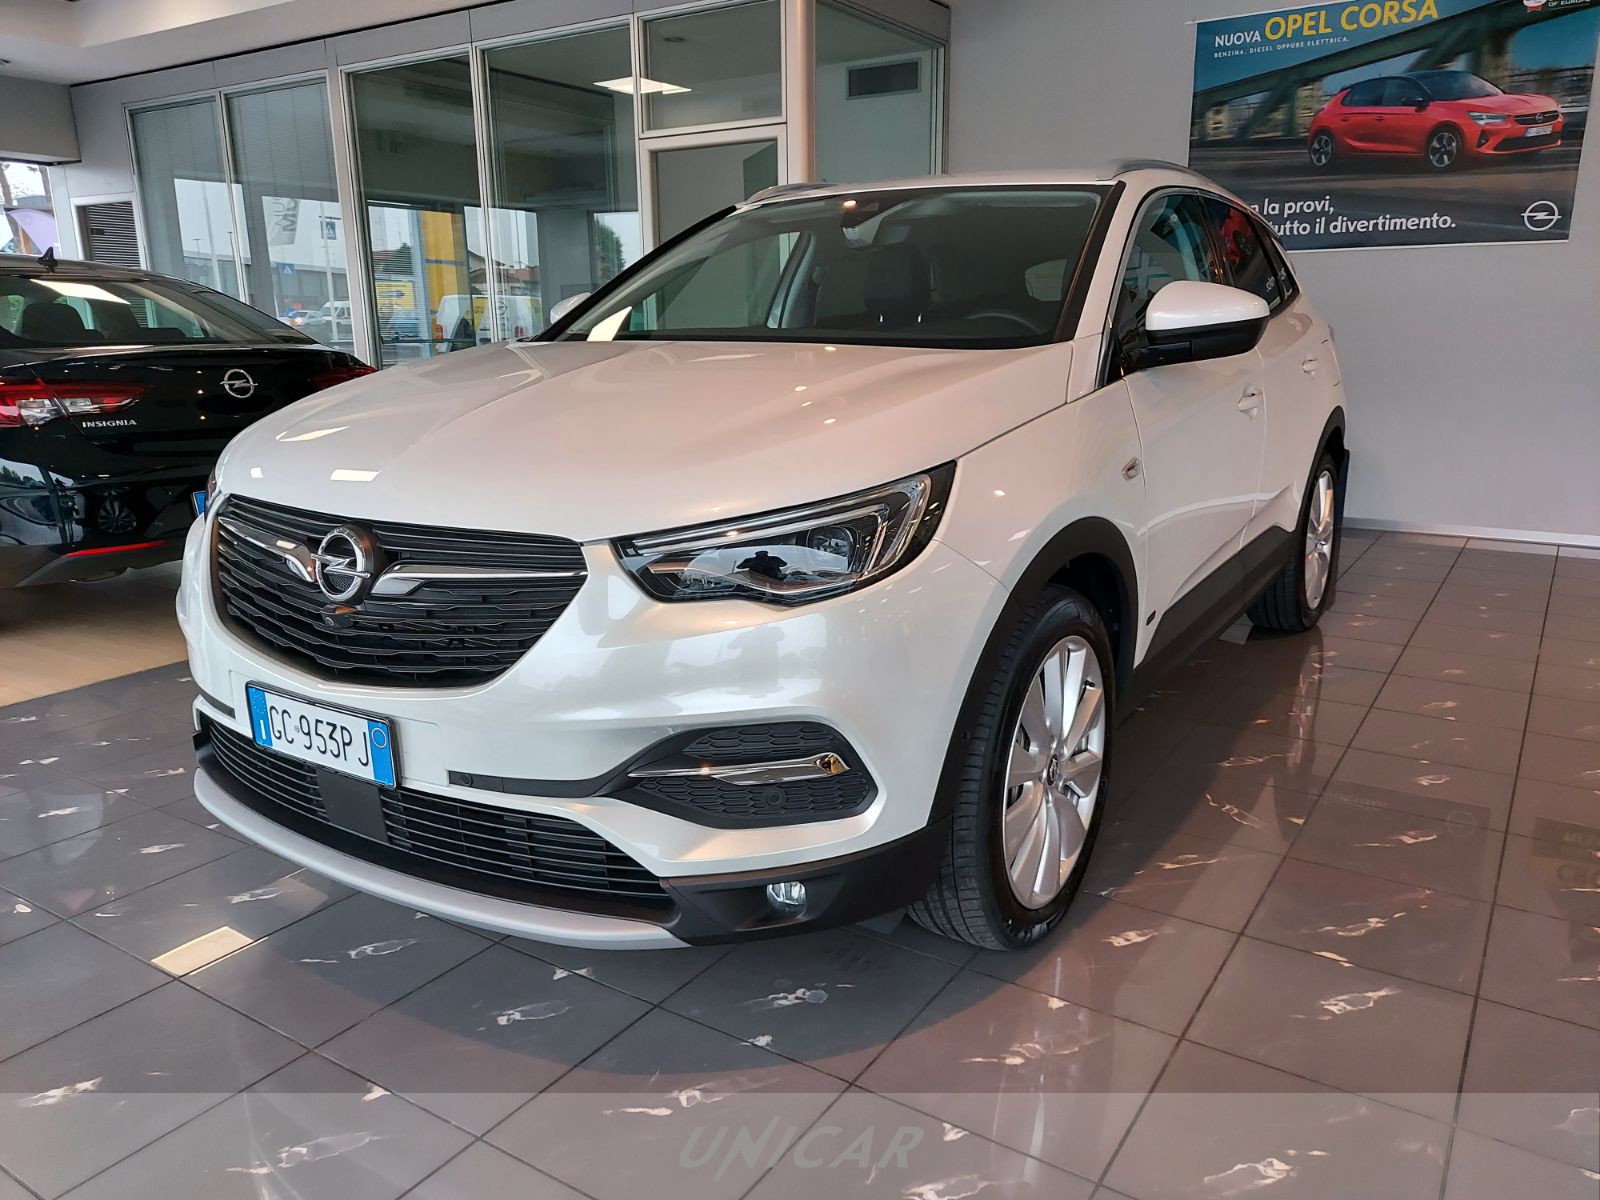 UNICAR Opel Grandland X